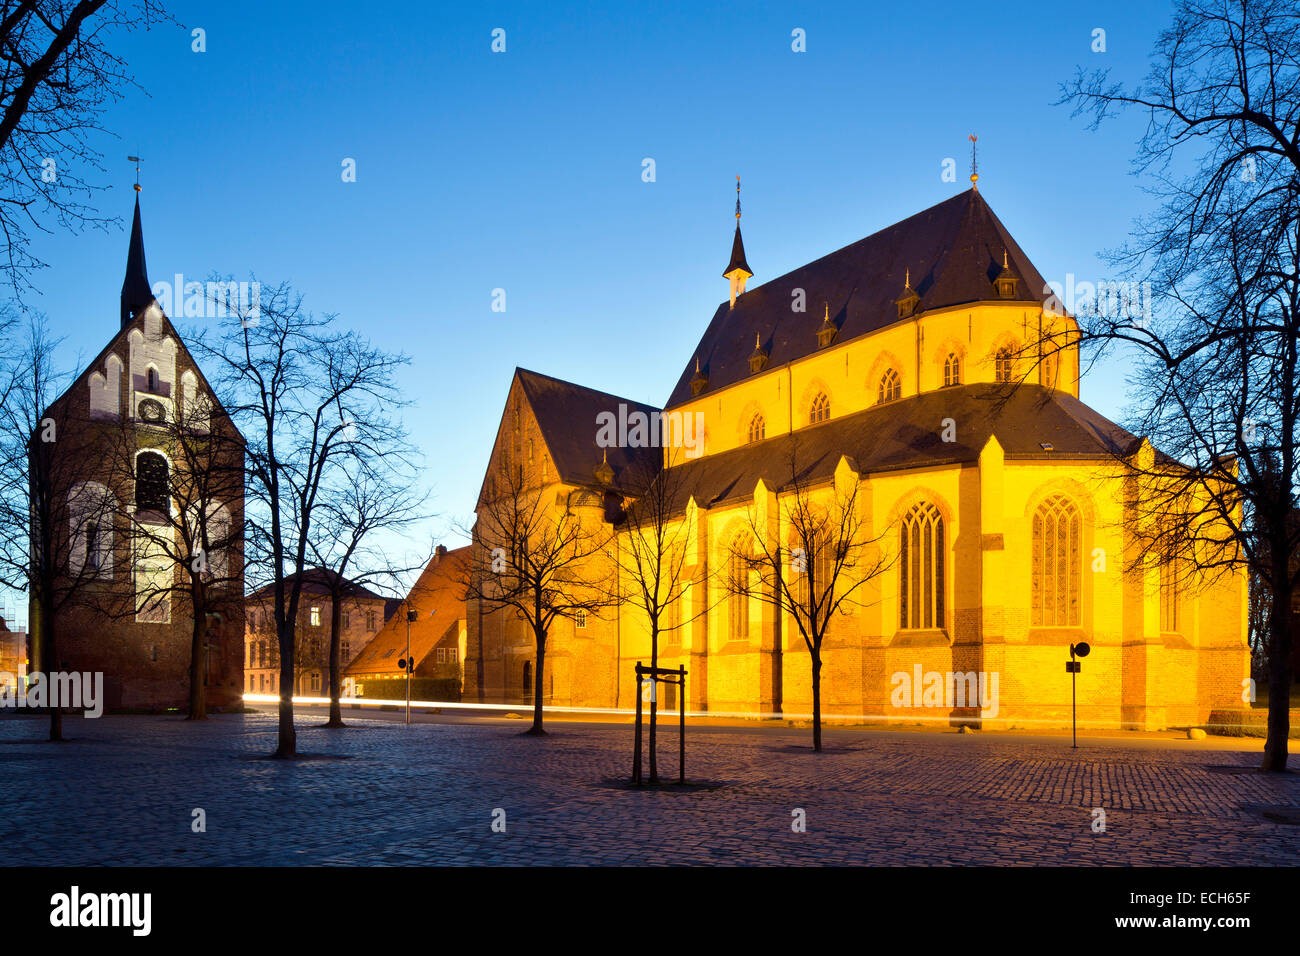 Ludgerikirche romanica chiesa del XIII secolo con il campanile, Norden, Frisia orientale, Bassa Sassonia, Germania Foto Stock